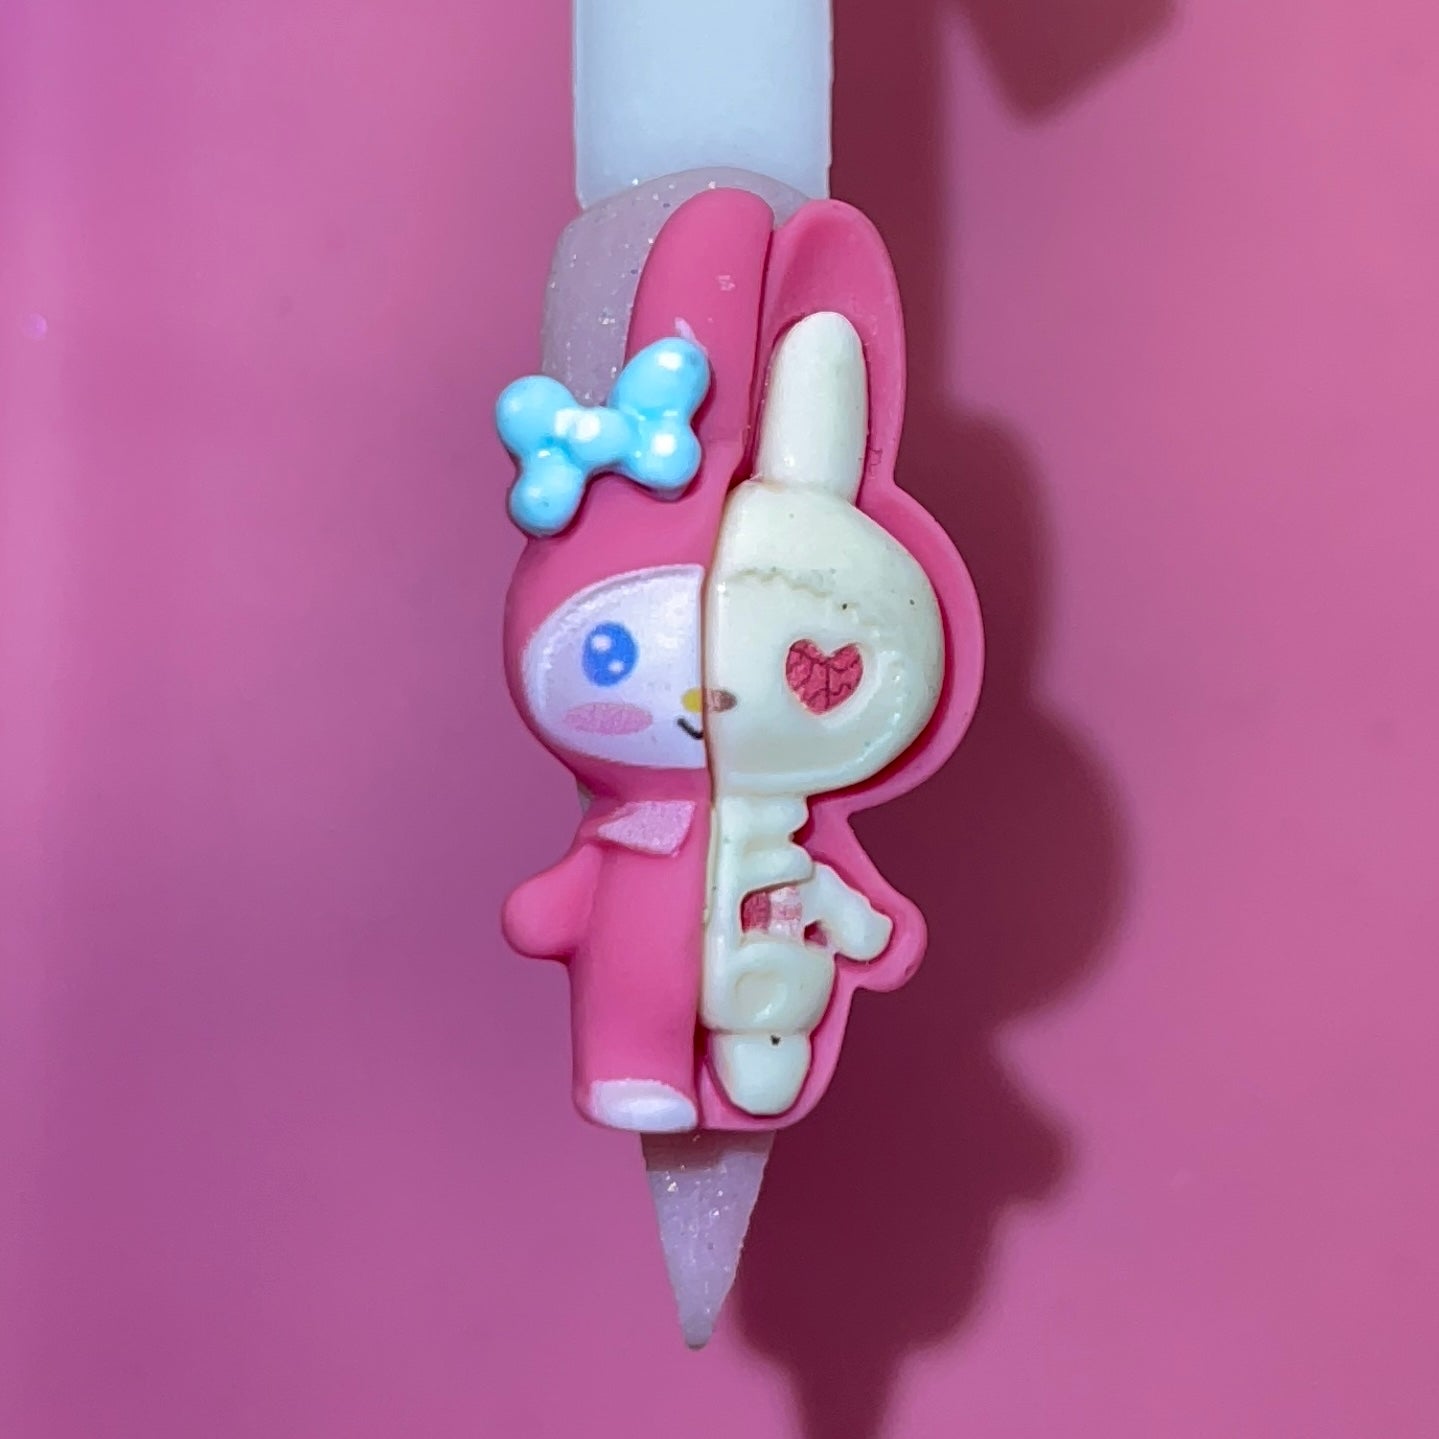 Hello Kitty Halloween Keychain